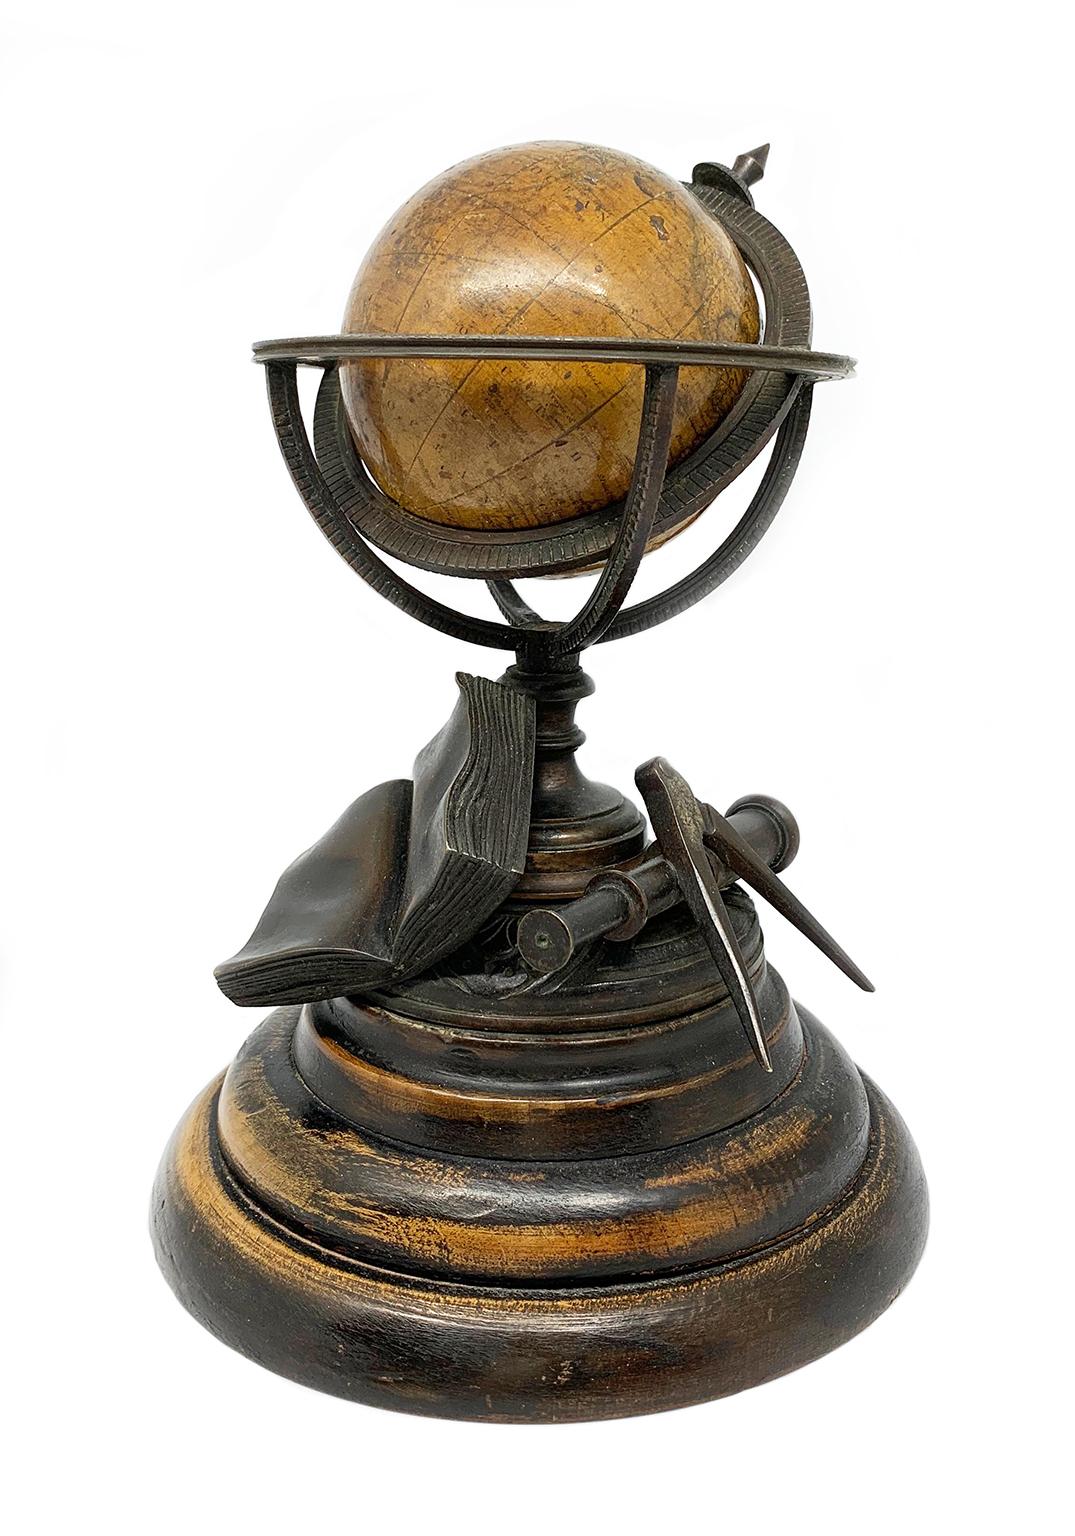 Globo terráqueo en miniatura
Newton and Son
Londres, después de 1833, antes de 1858
Papel, cartón piedra, bronce y madera
Mide: diámetro de la esfera 7,6 cm; diámetro de la base de madera 15,3 cm; altura 21,24 cm.
Peso: 2,067 lb.
Estado de